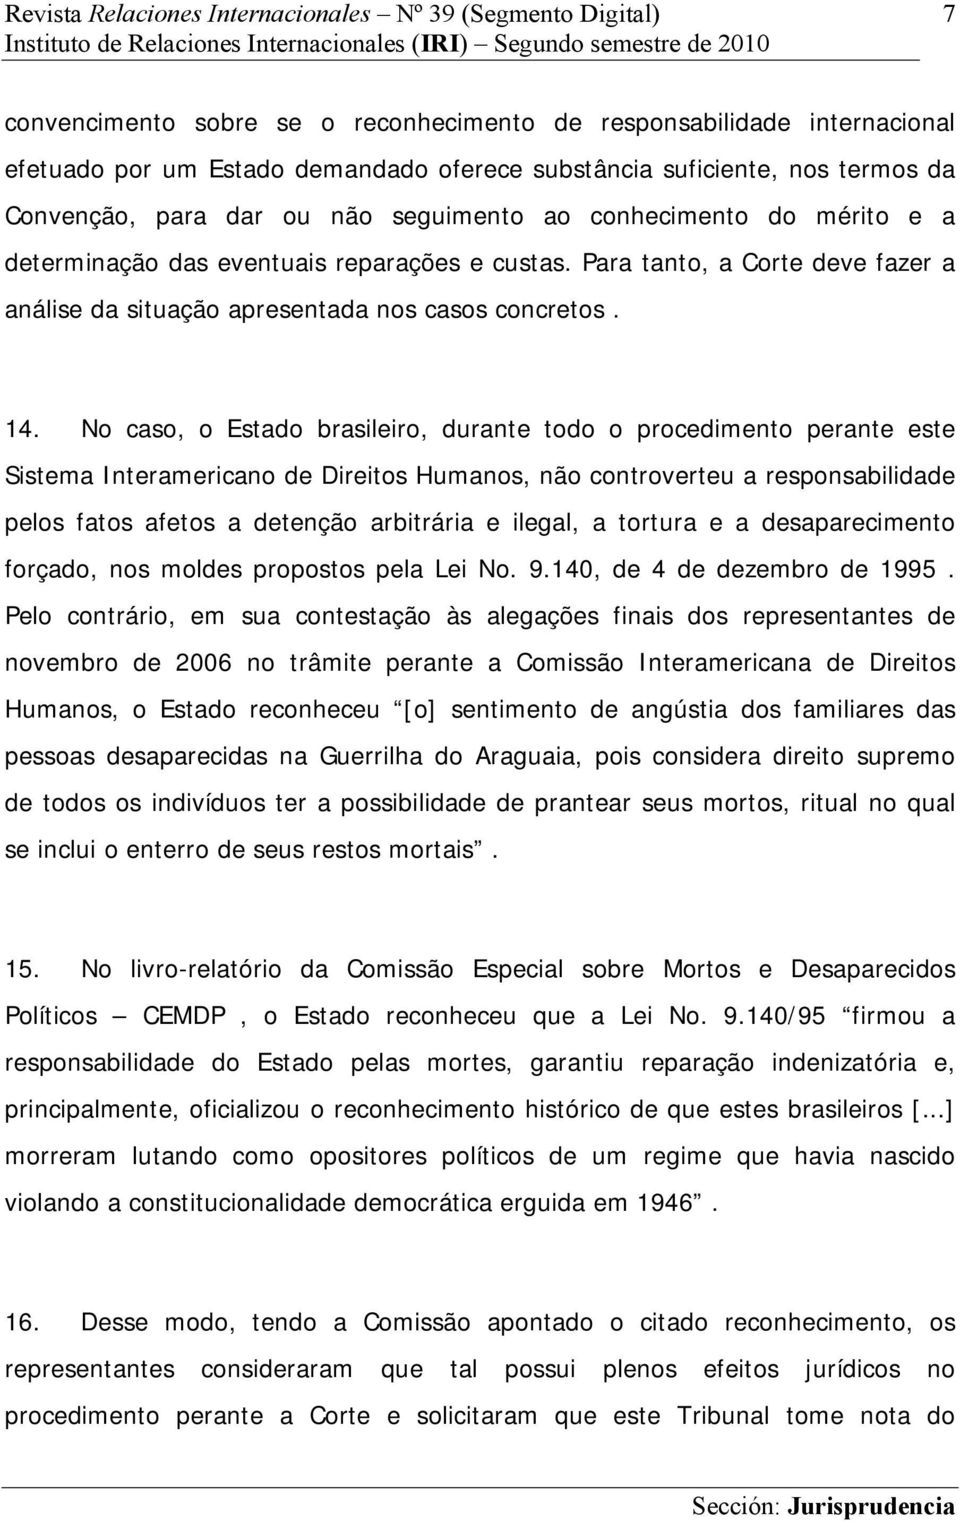 No caso, o Estado brasileiro, durante todo o procedimento perante este Sistema Interamericano de Direitos Humanos, não controverteu a responsabilidade pelos fatos afetos a detenção arbitrária e